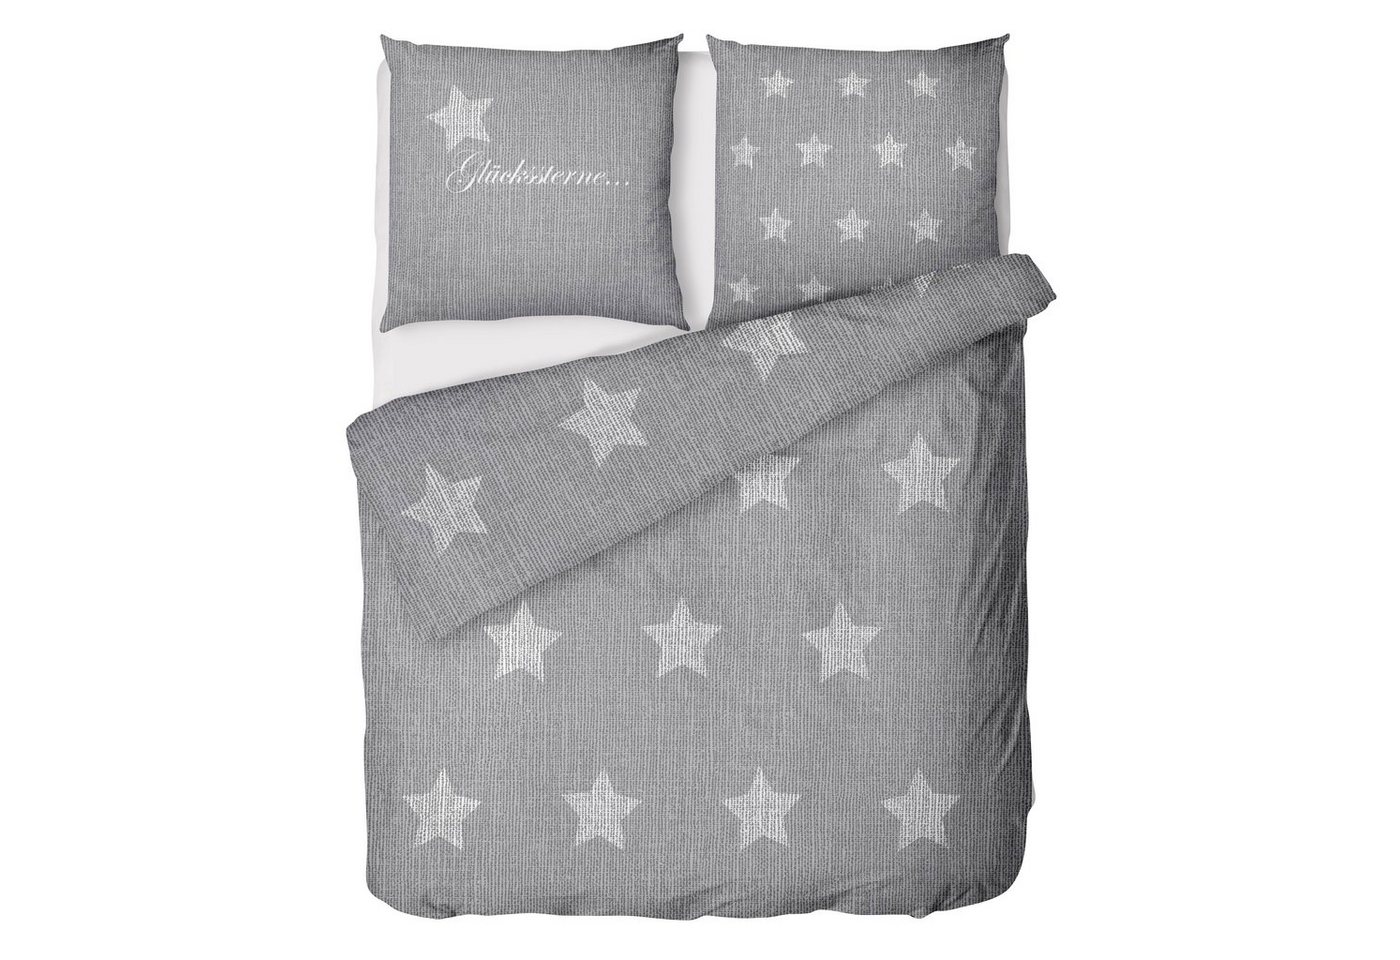 Bettwäsche Sterne Bettwäsche 135x200 - Bettwäsche Sterne Grau 135x200, LINKHOFF, Bettwäsche mit Sprüche - Bettwäsche Sterne Baumwolle von LINKHOFF